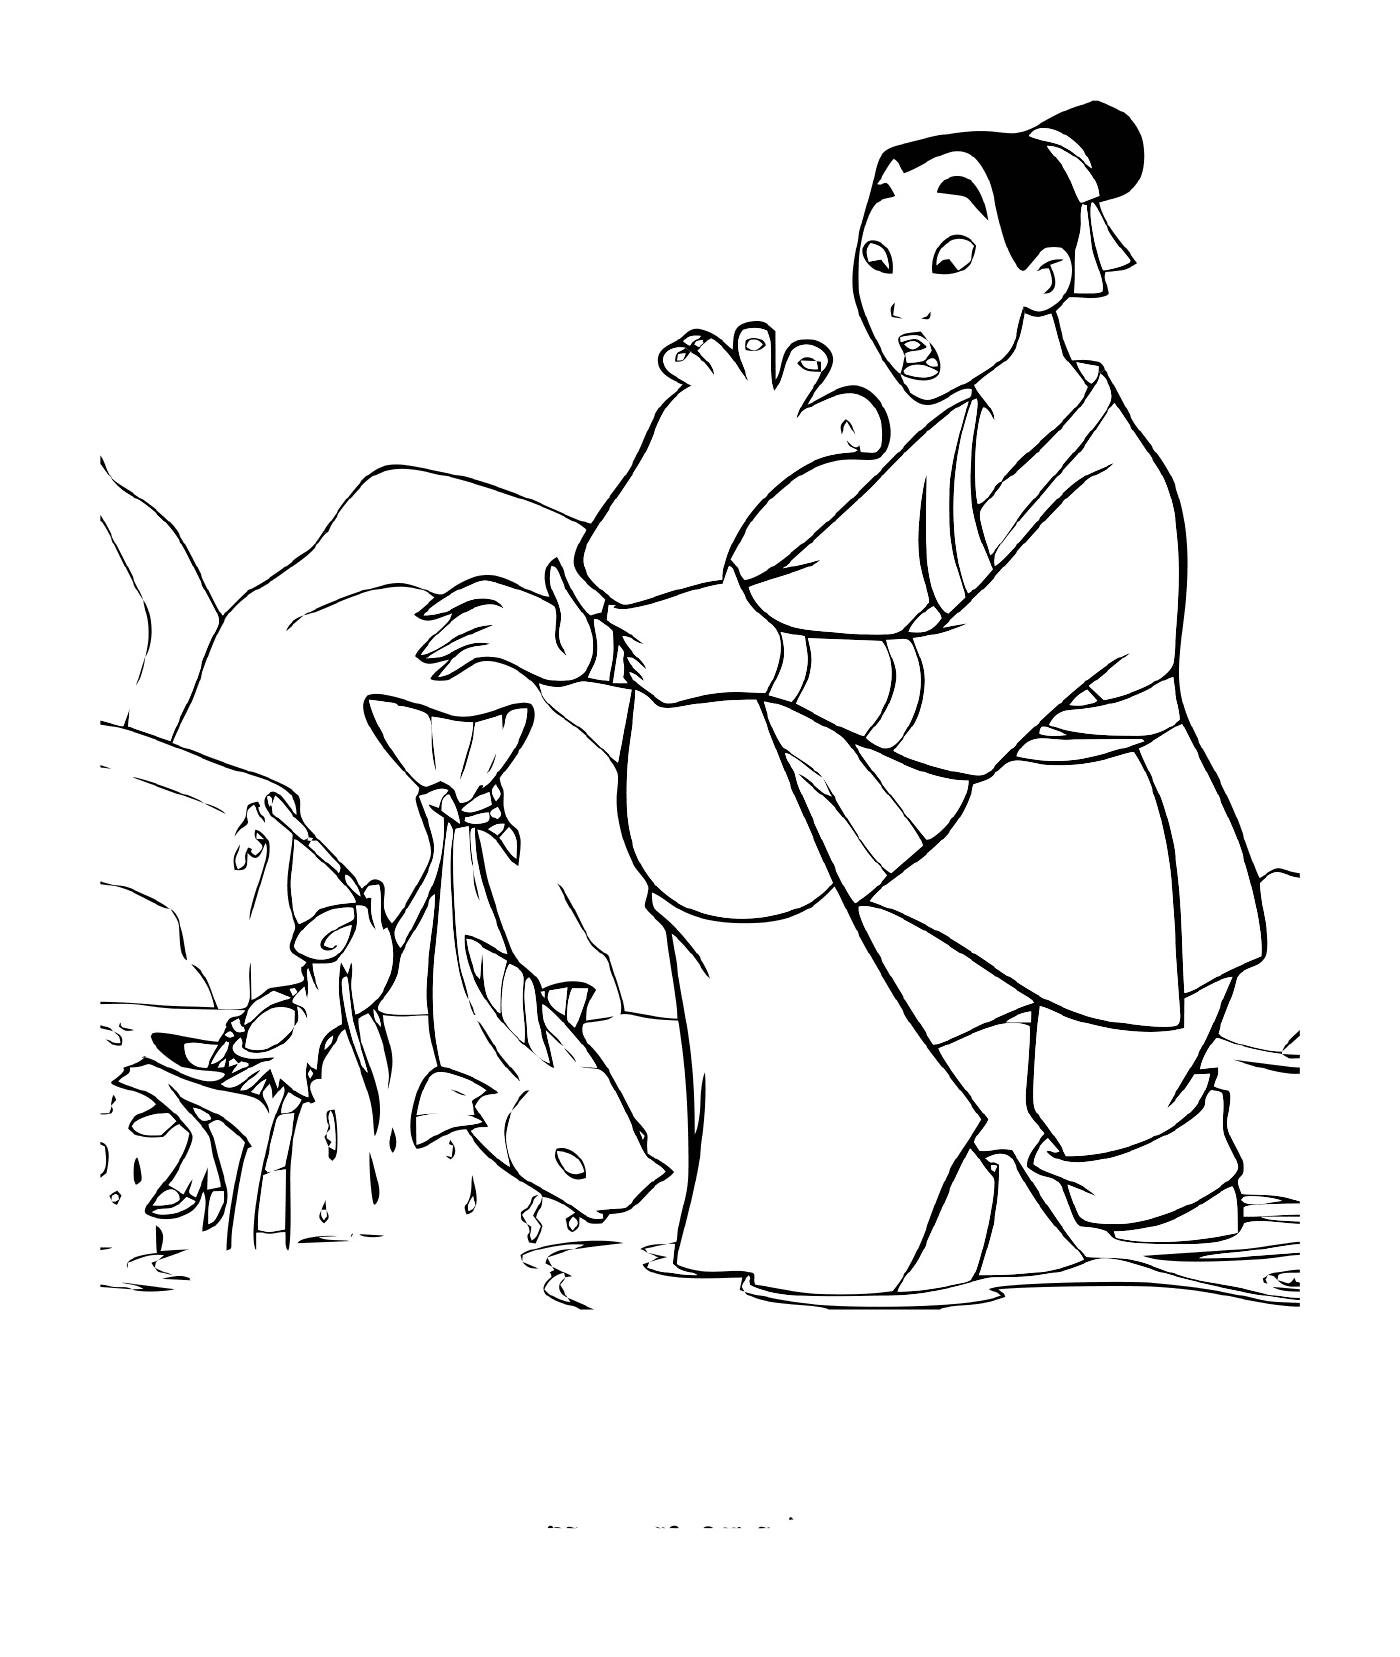   Mulan pêche avec Mushu 